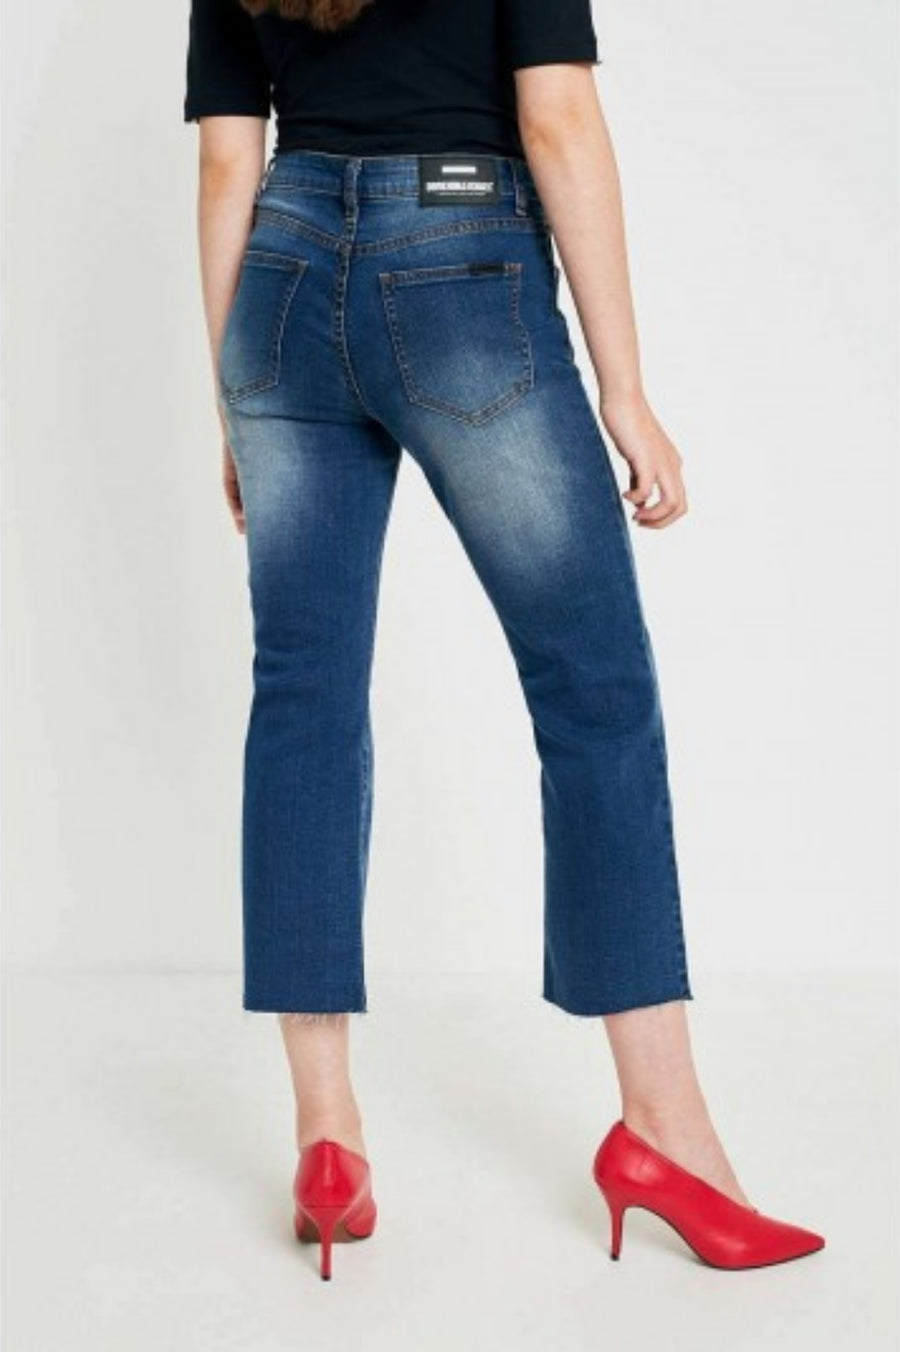 Meadow Jeans - Worn Mid Blue Raw Hem - Dr Denim Jeans - Australia & NZ